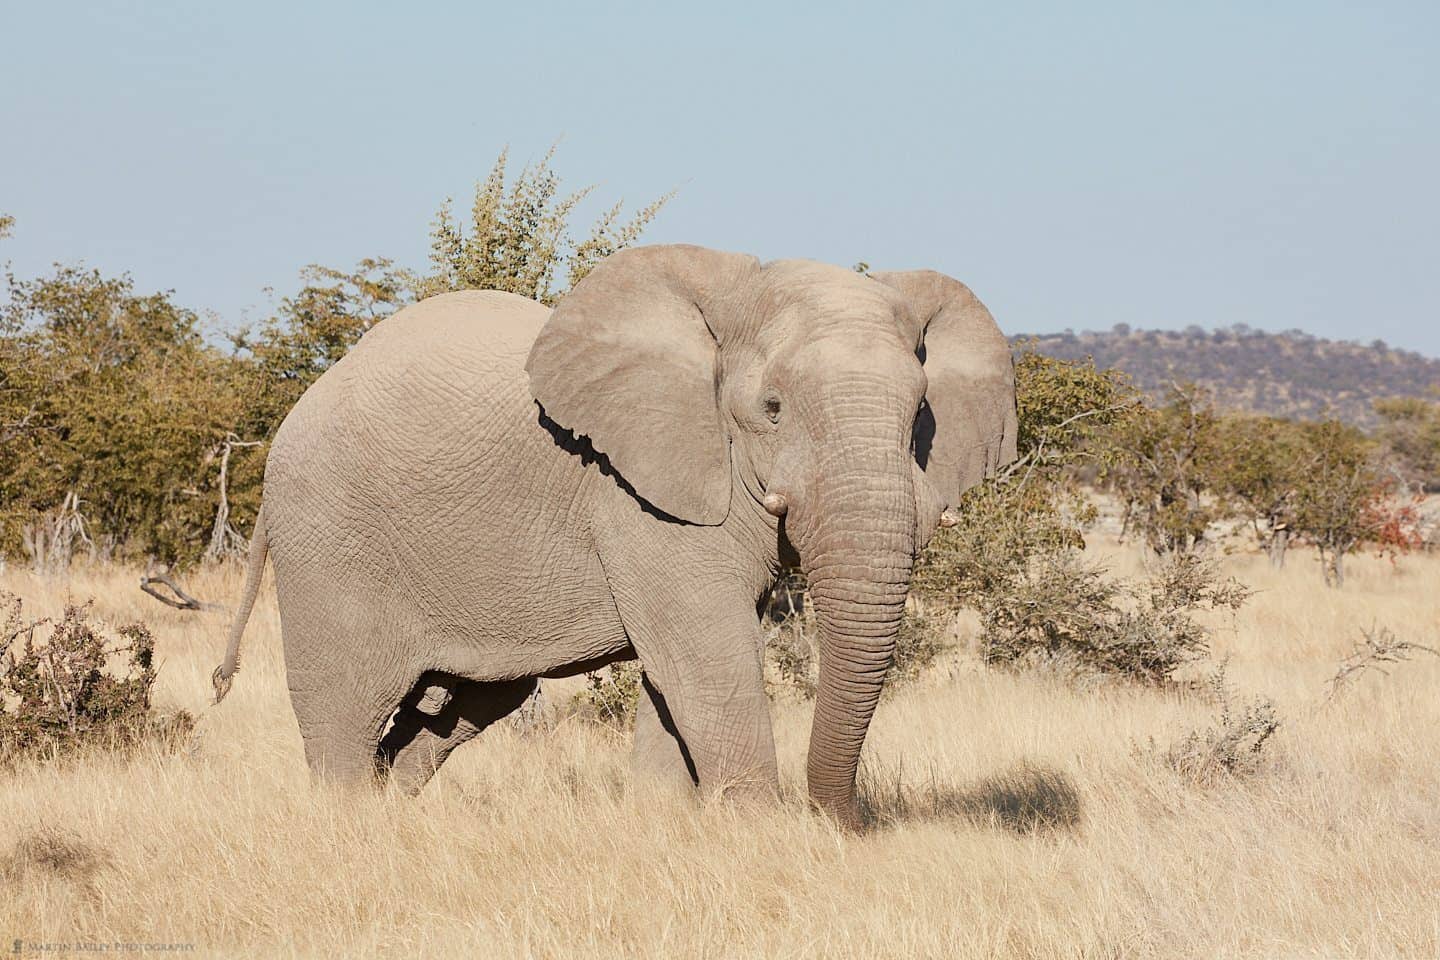 Elephant in Long Grass